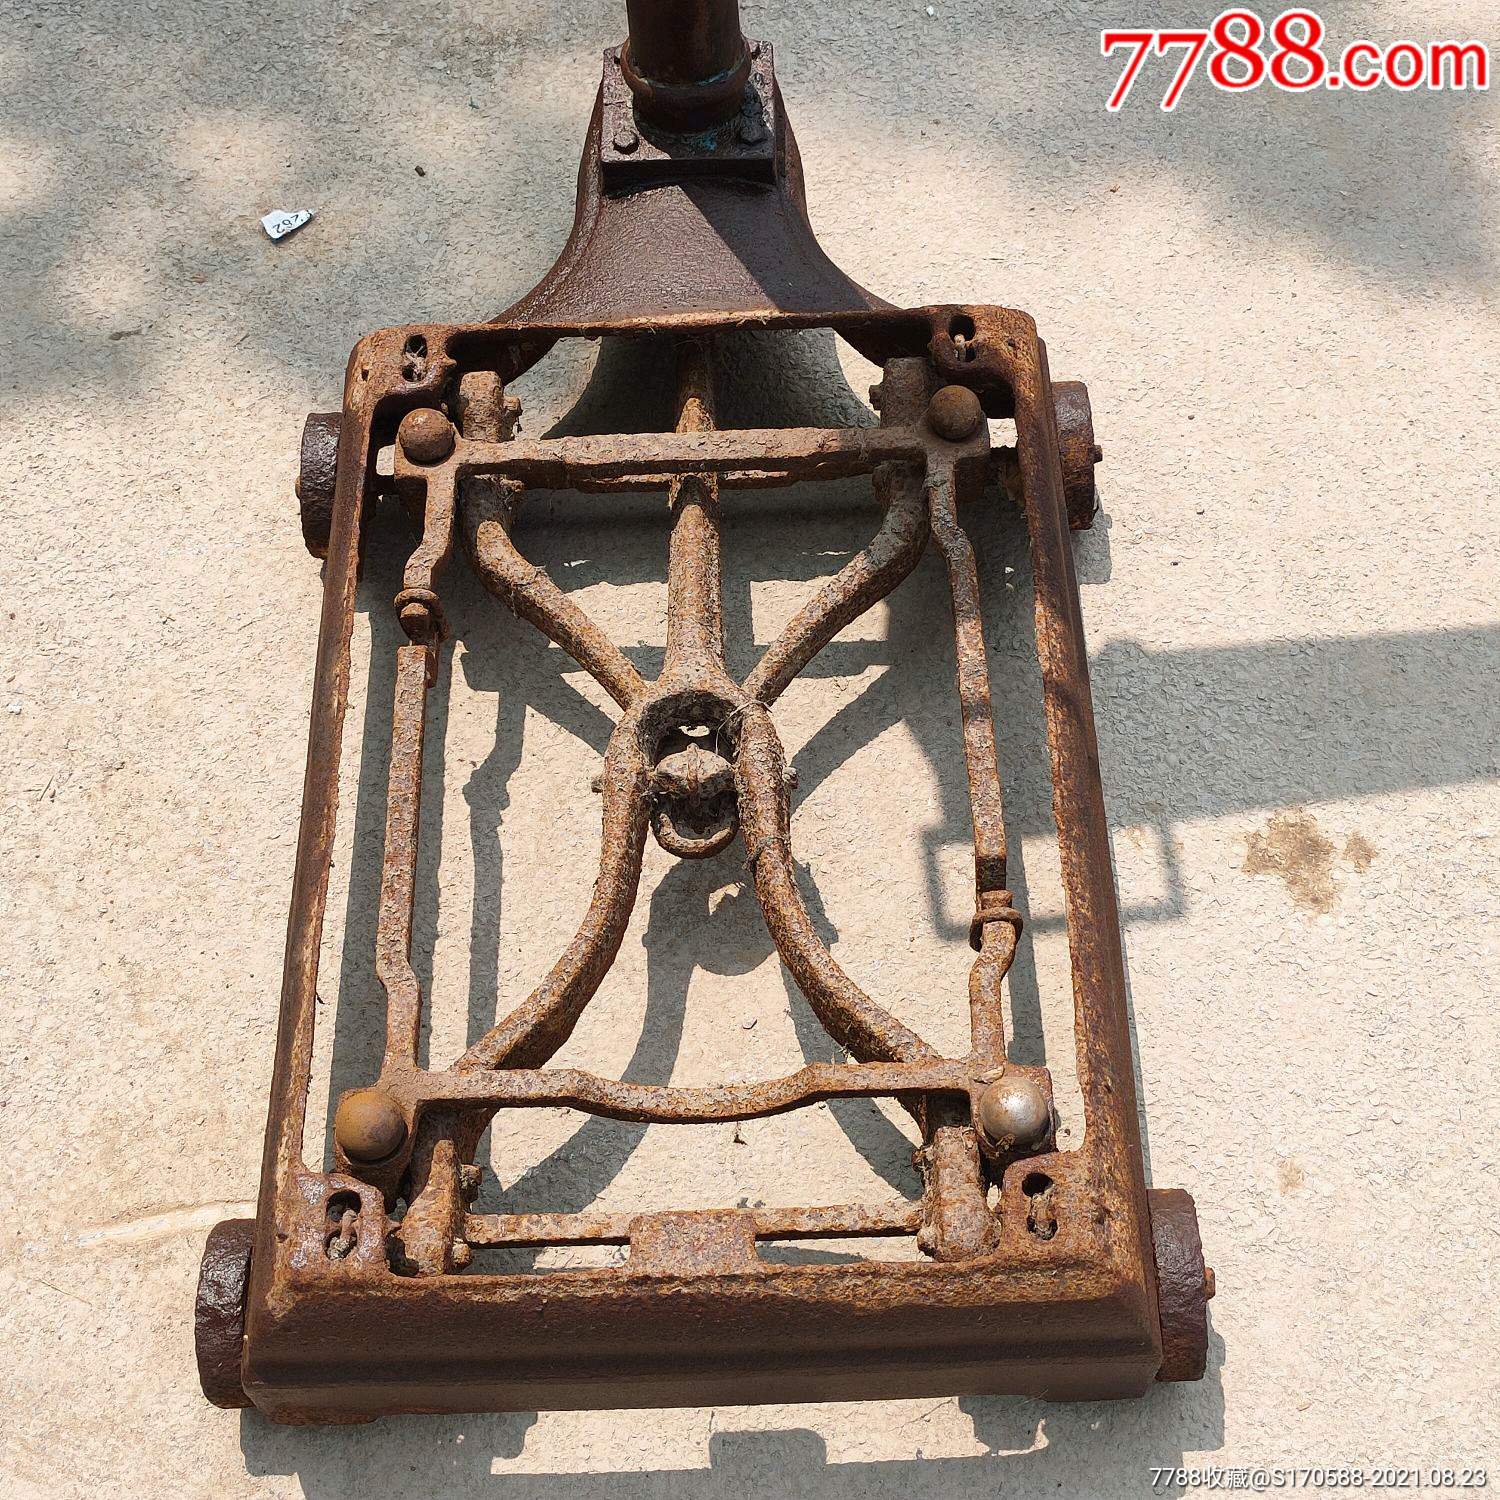 铜杆老磅秤山东济南市公私合营台秤长出铜杆老磅秤,称重300公斤品相